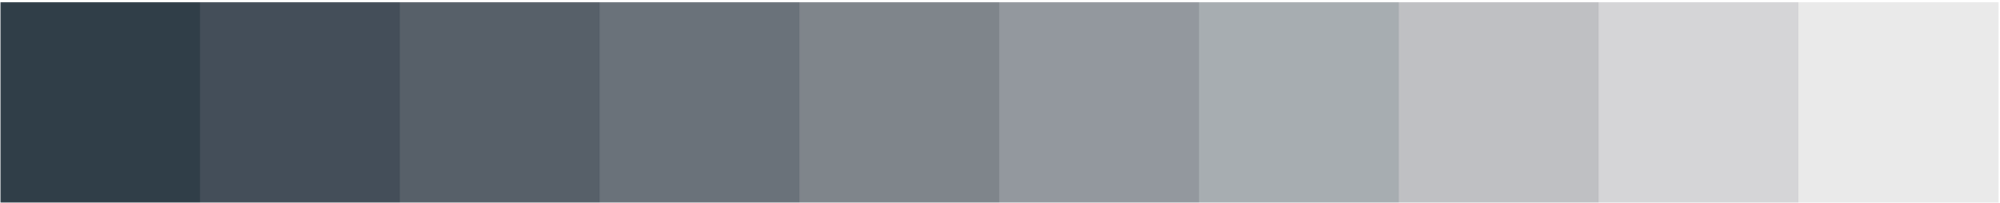 Nittedal kommune primærfarge grå